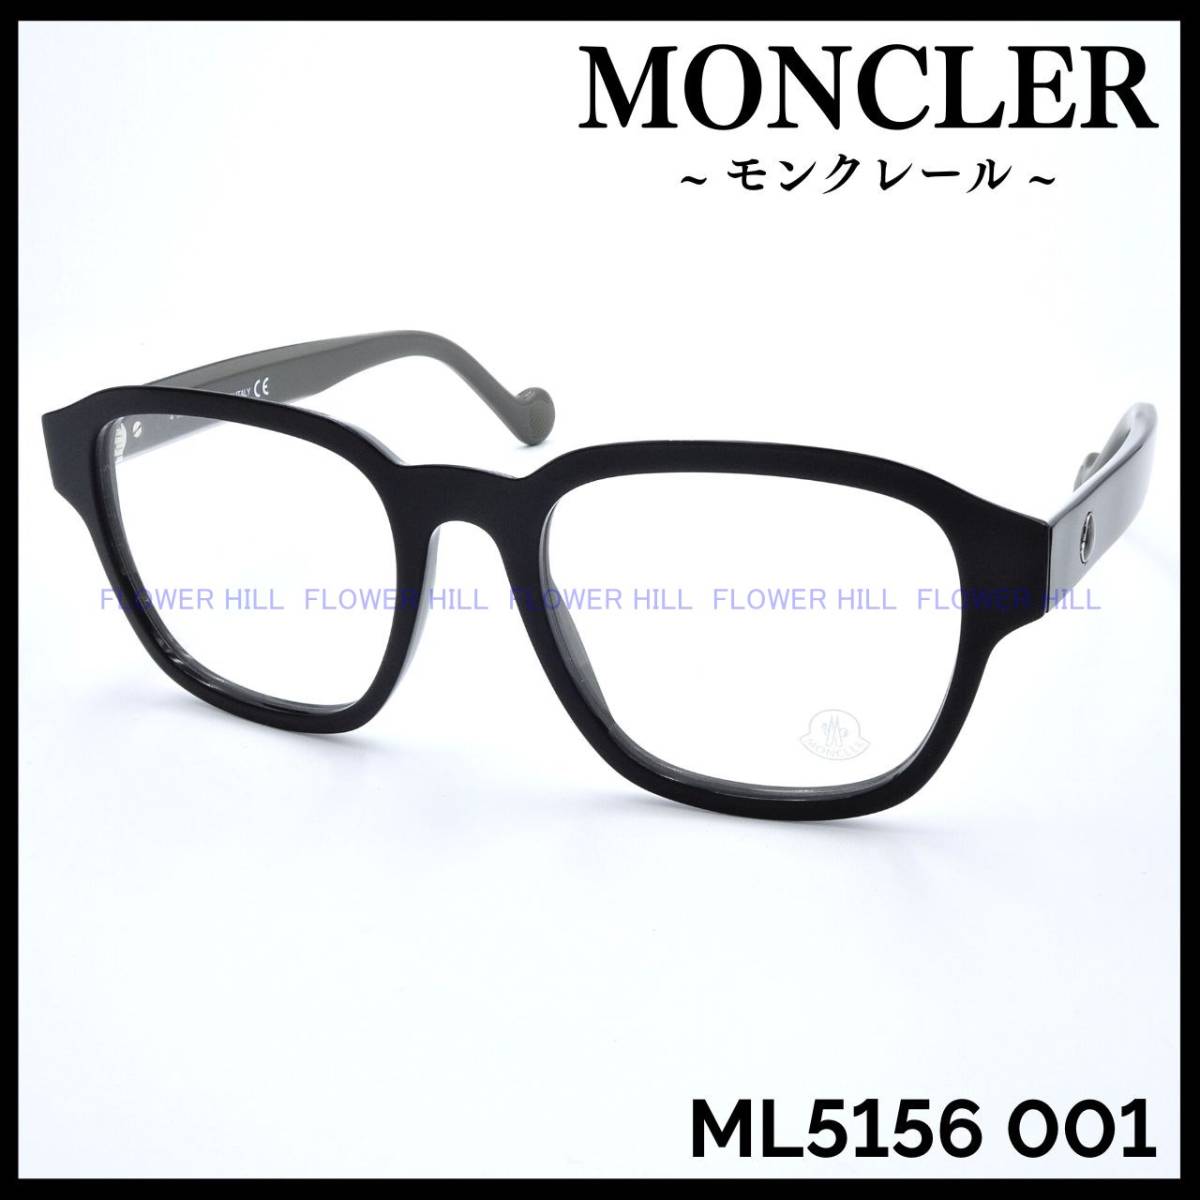 【新品・送料無料】モンクレール MONCLER ML5156 001 メガネ フレーム ブラック イタリア製 メンズ レディース ボストン